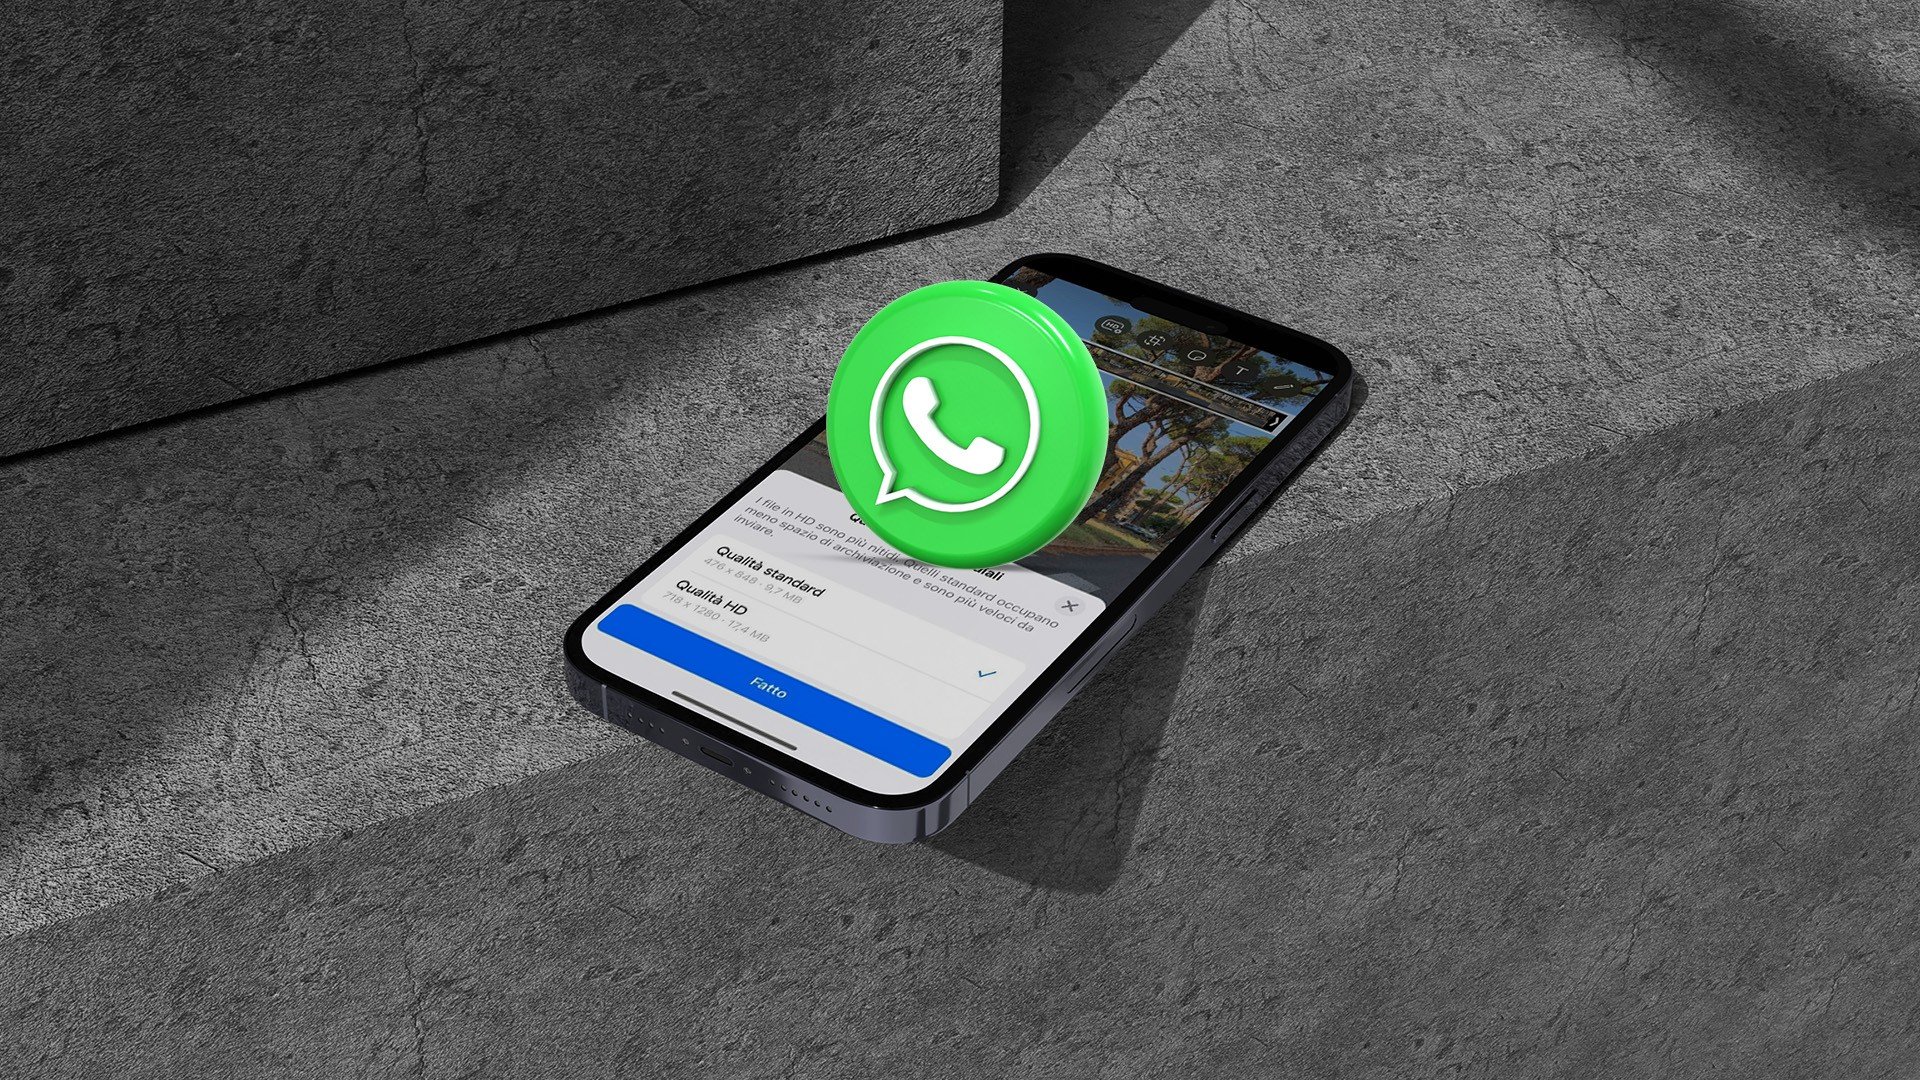 WhatsApp pronto podría lanzar actualizaciones de estado integradas en Instagram en versión estable